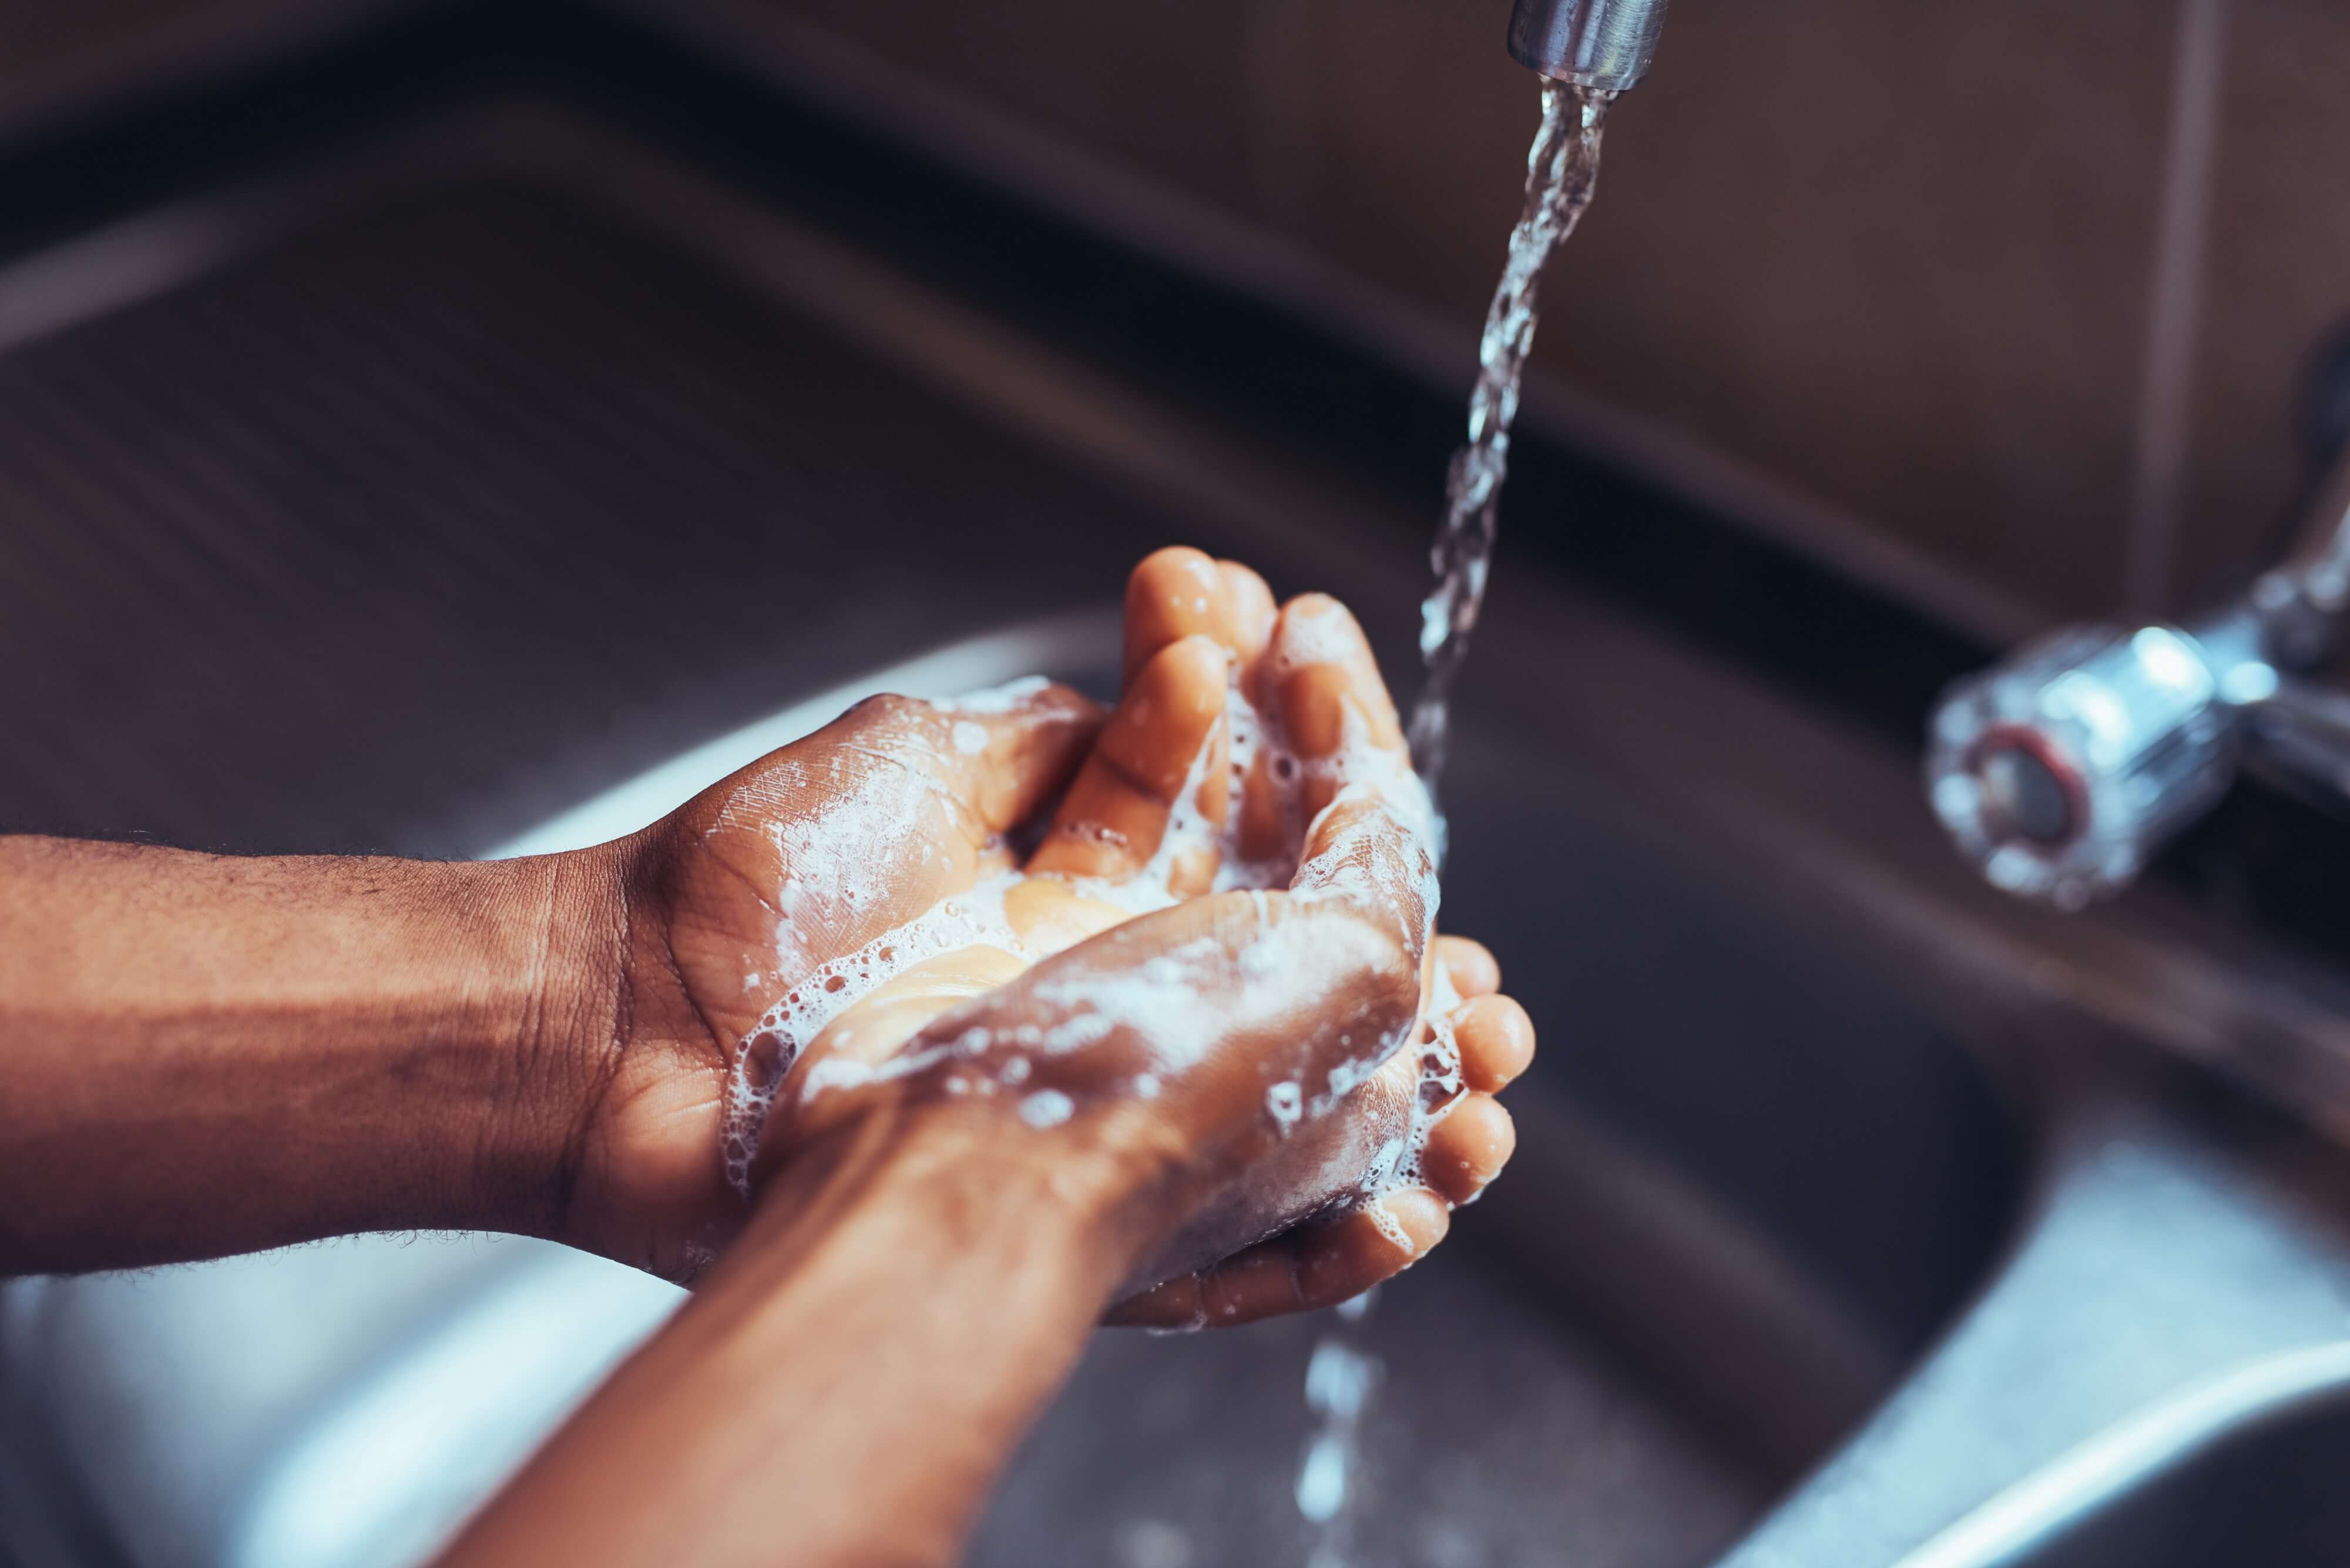 Mycie rąk pomaga podejmować decyzje